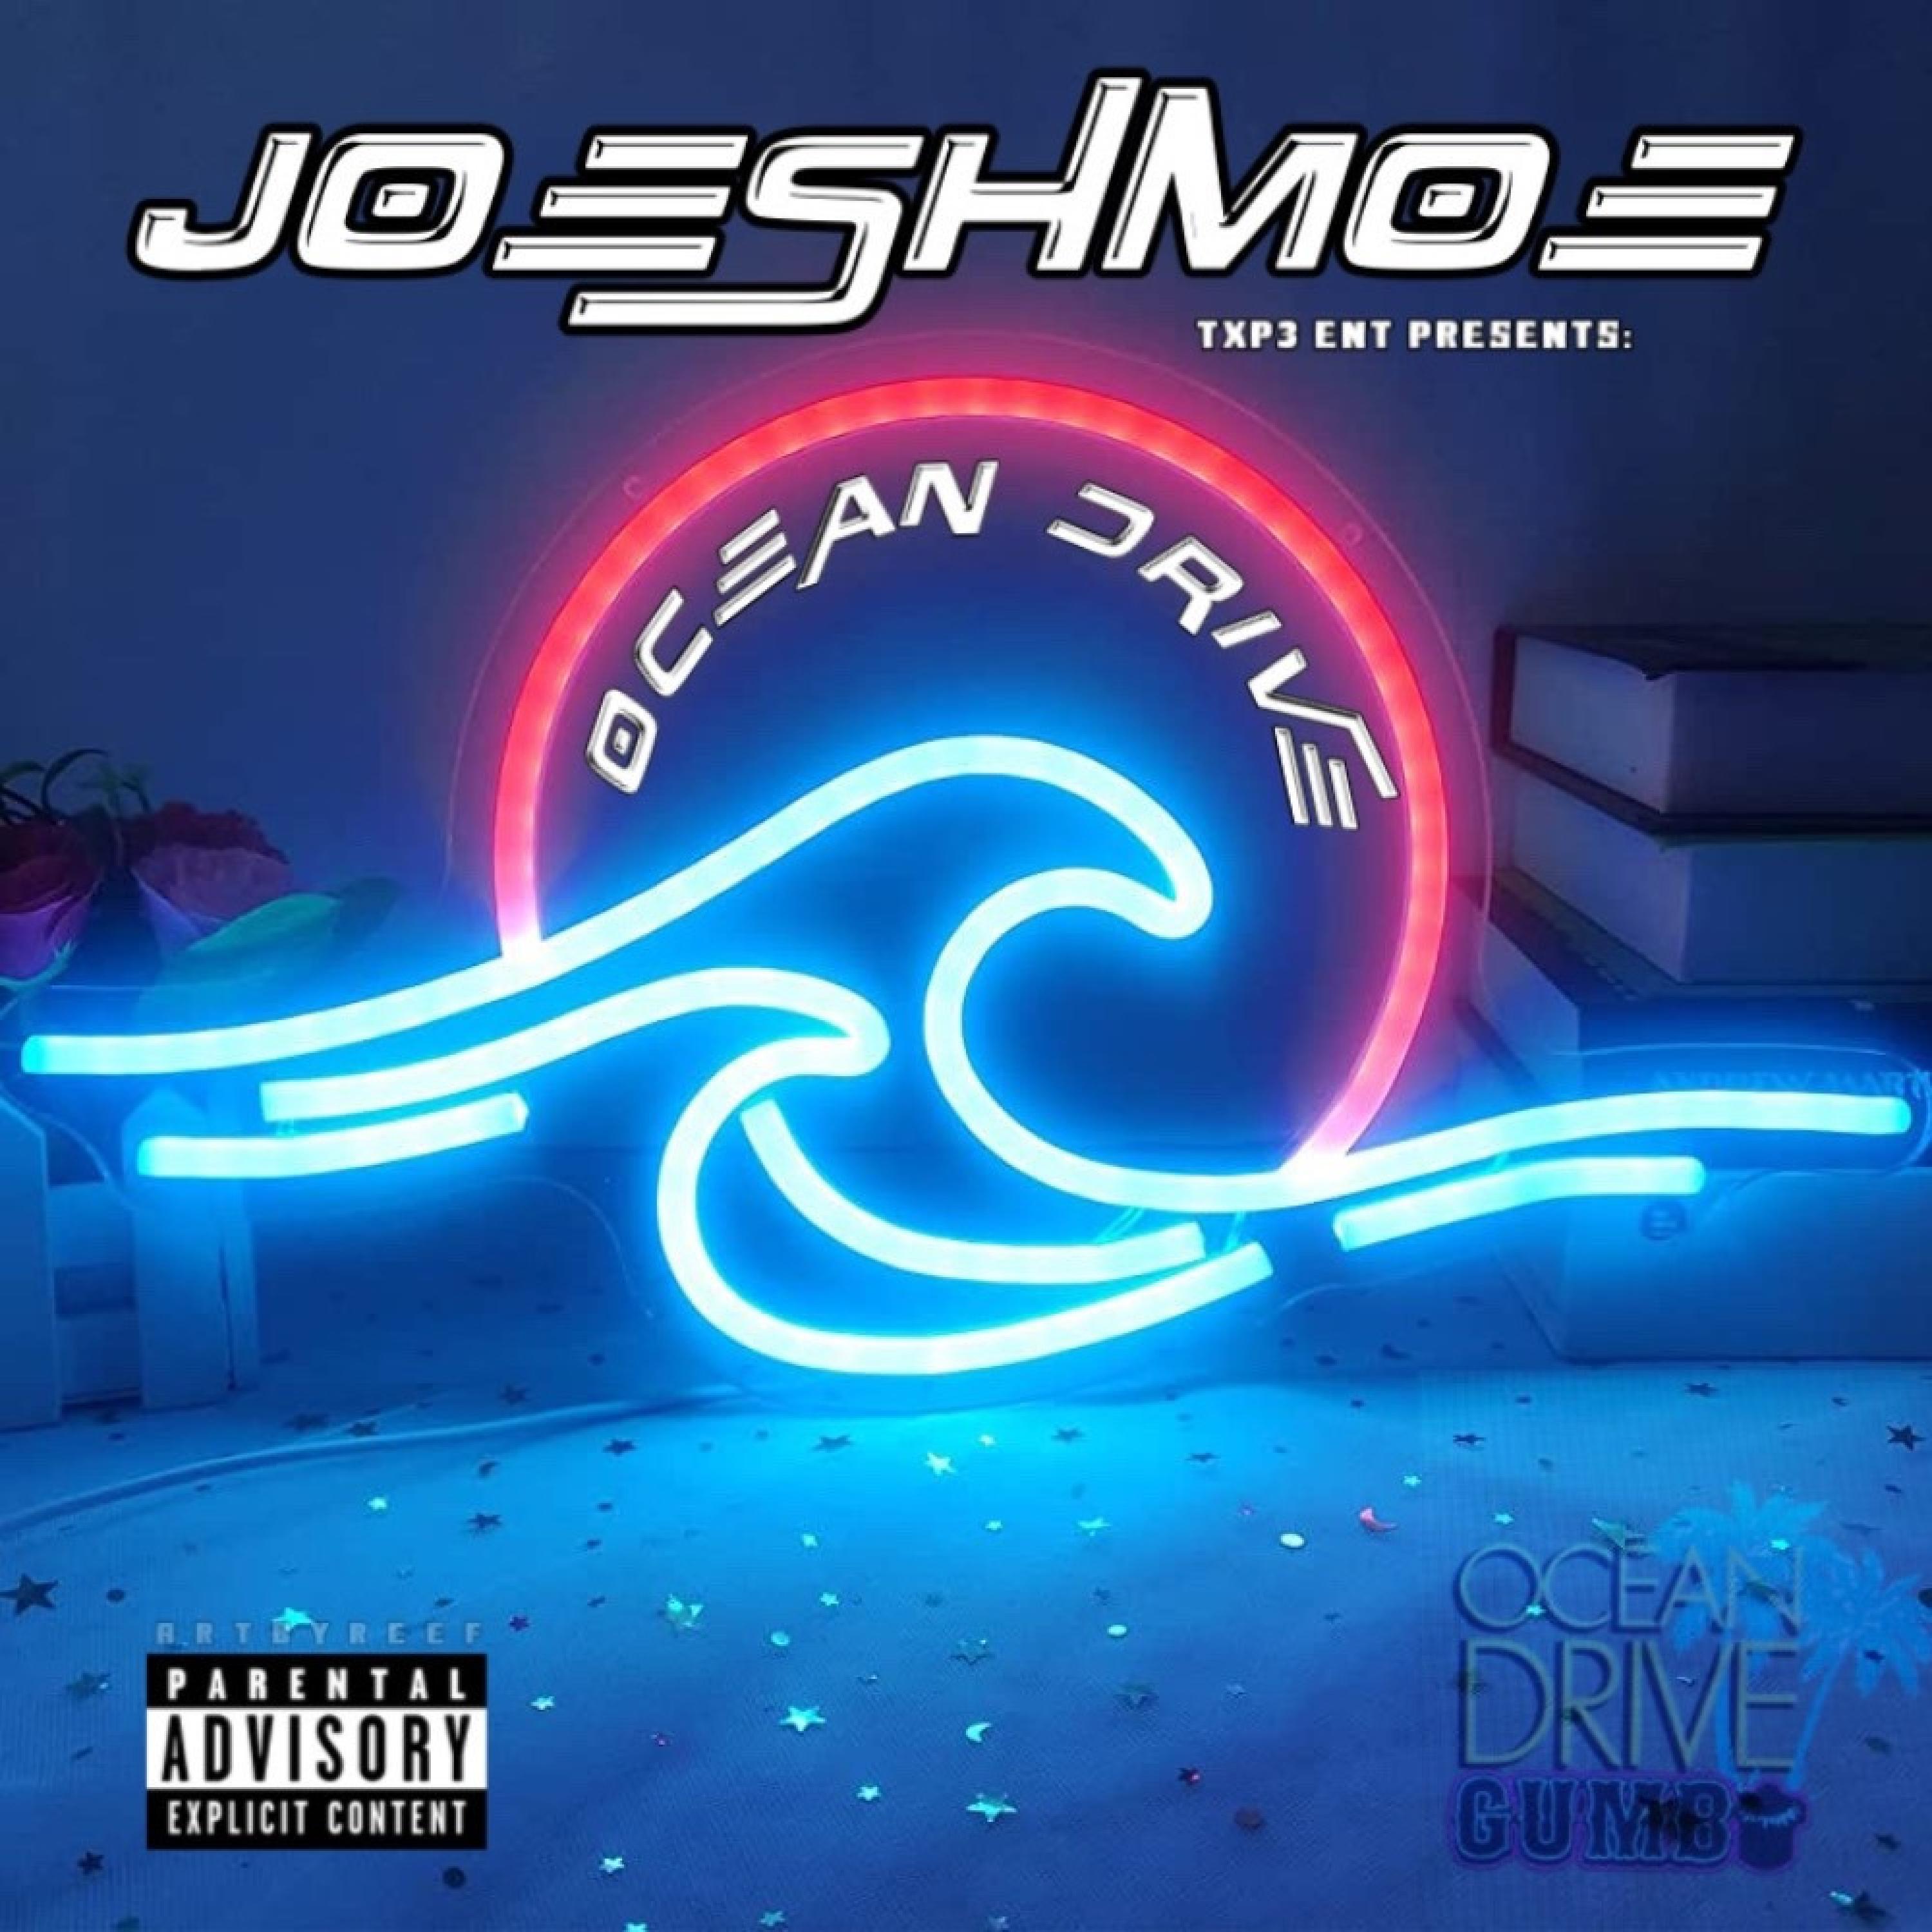 Joeshmoe - Ocean Drive